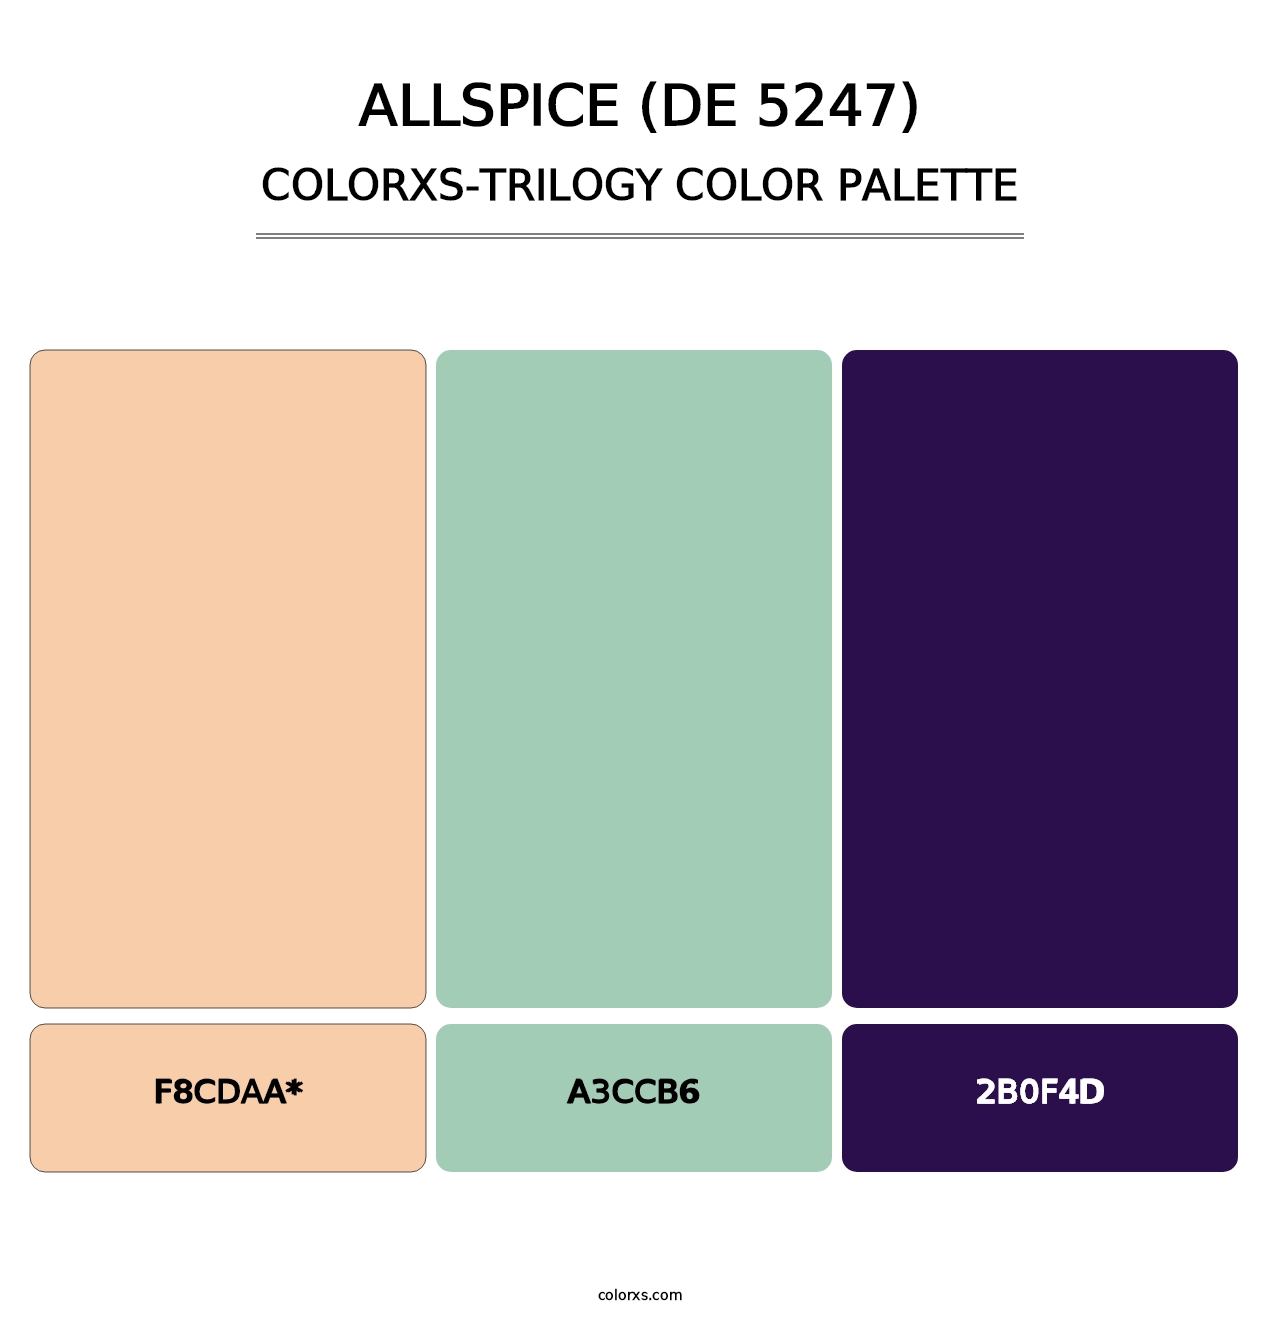 Allspice (DE 5247) - Colorxs Trilogy Palette